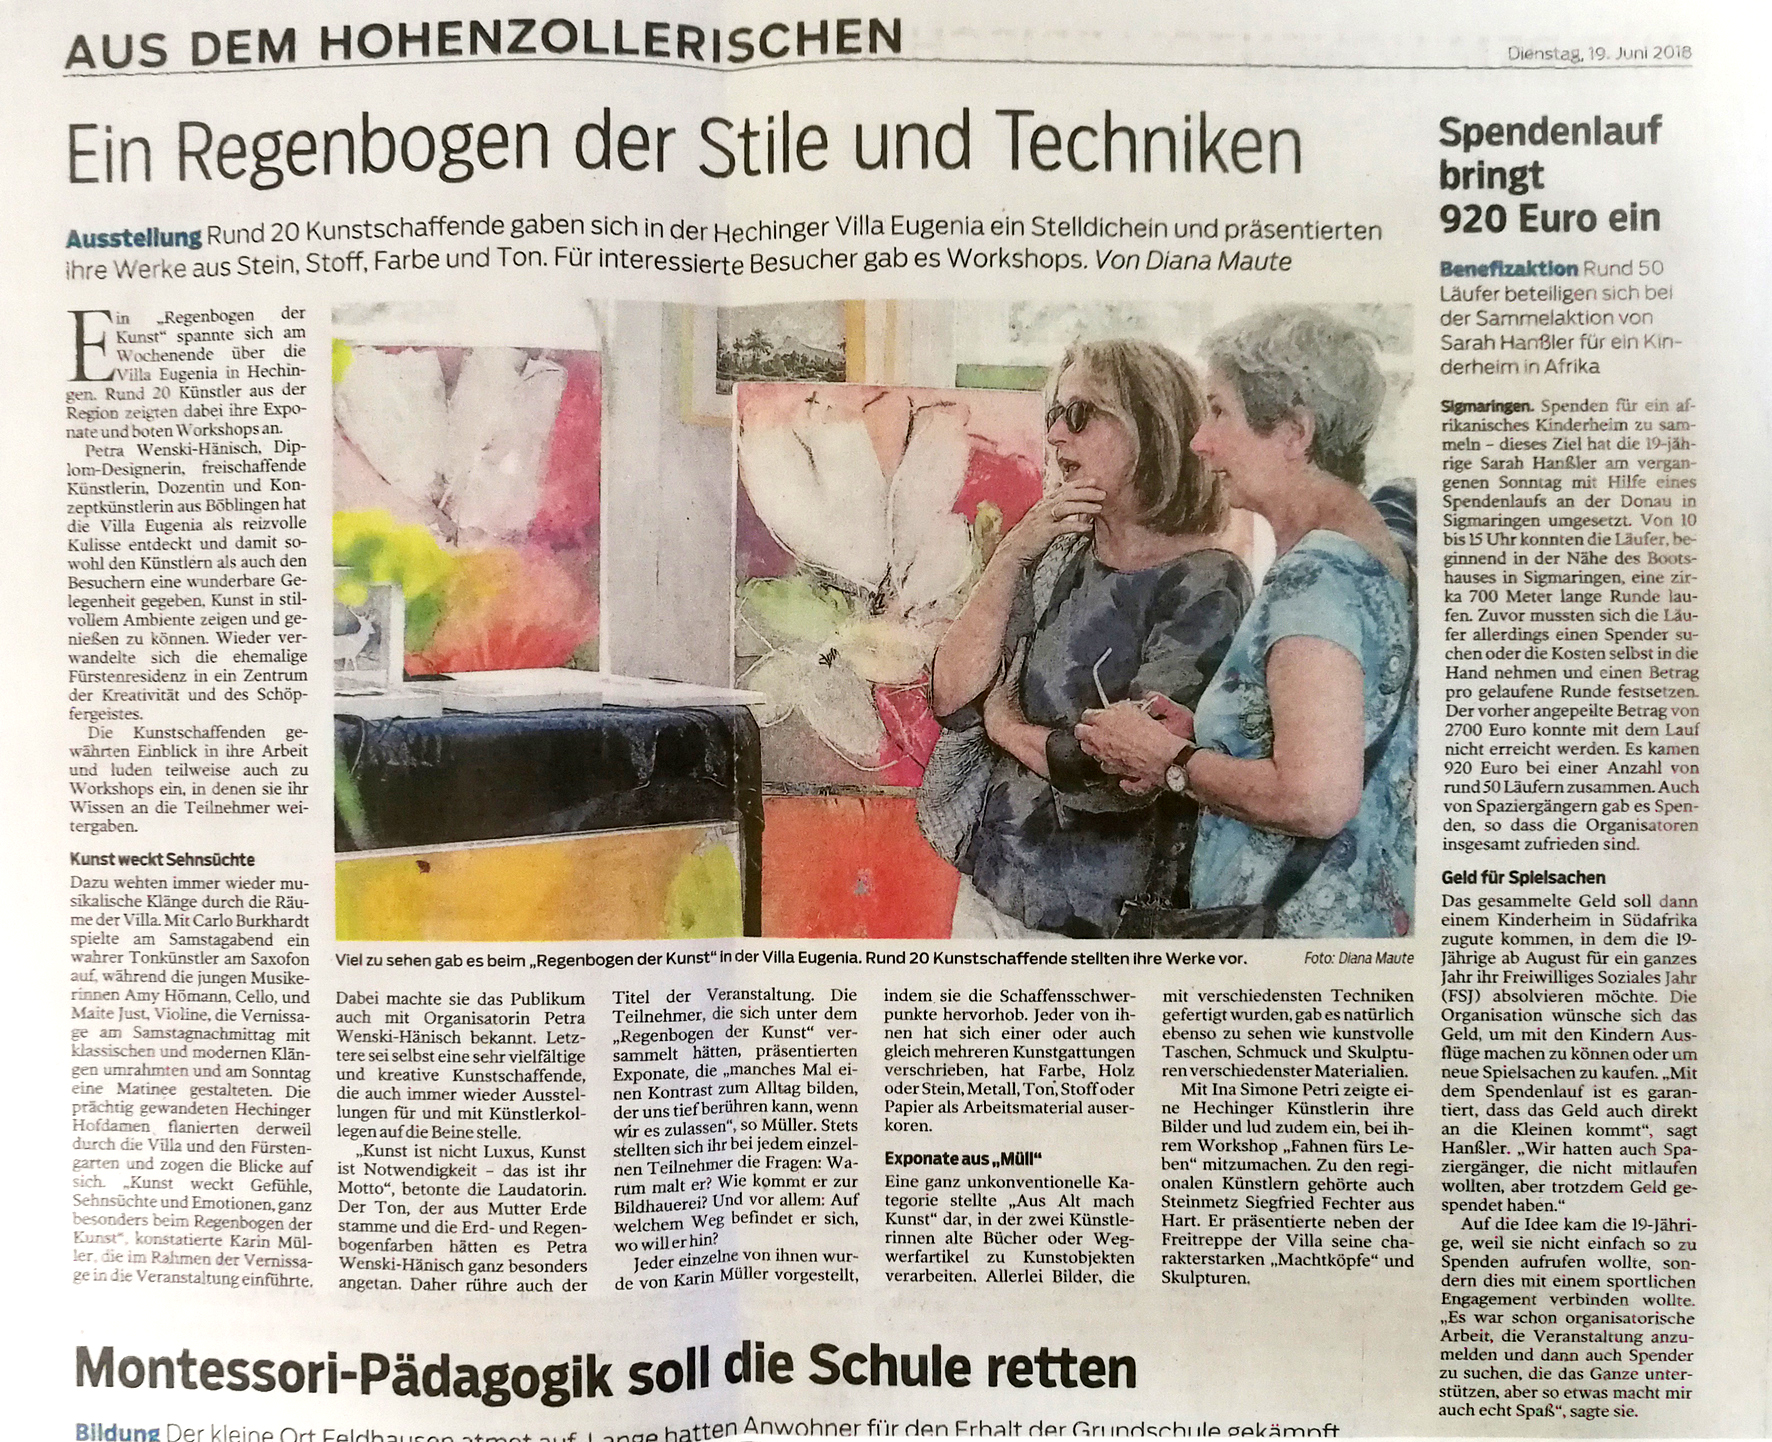 Artikel im Zollern Alb Kurier zum Regenbogen der Kunst in der Villa Eugenia in Hechingen 2018.